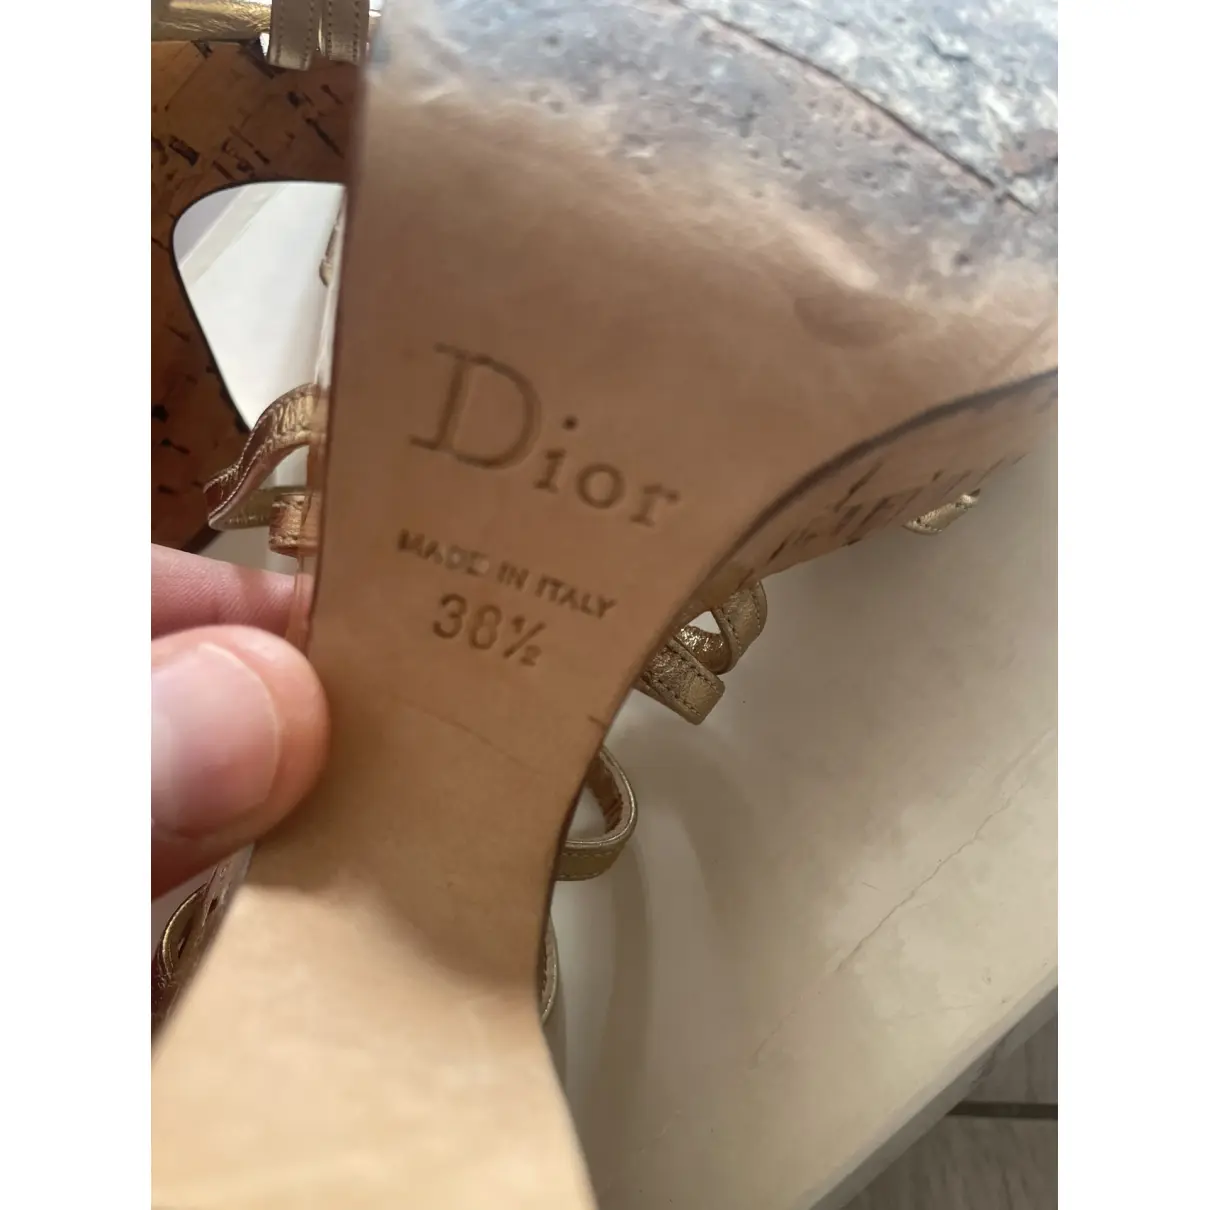 Leather sandals Dior - Vintage